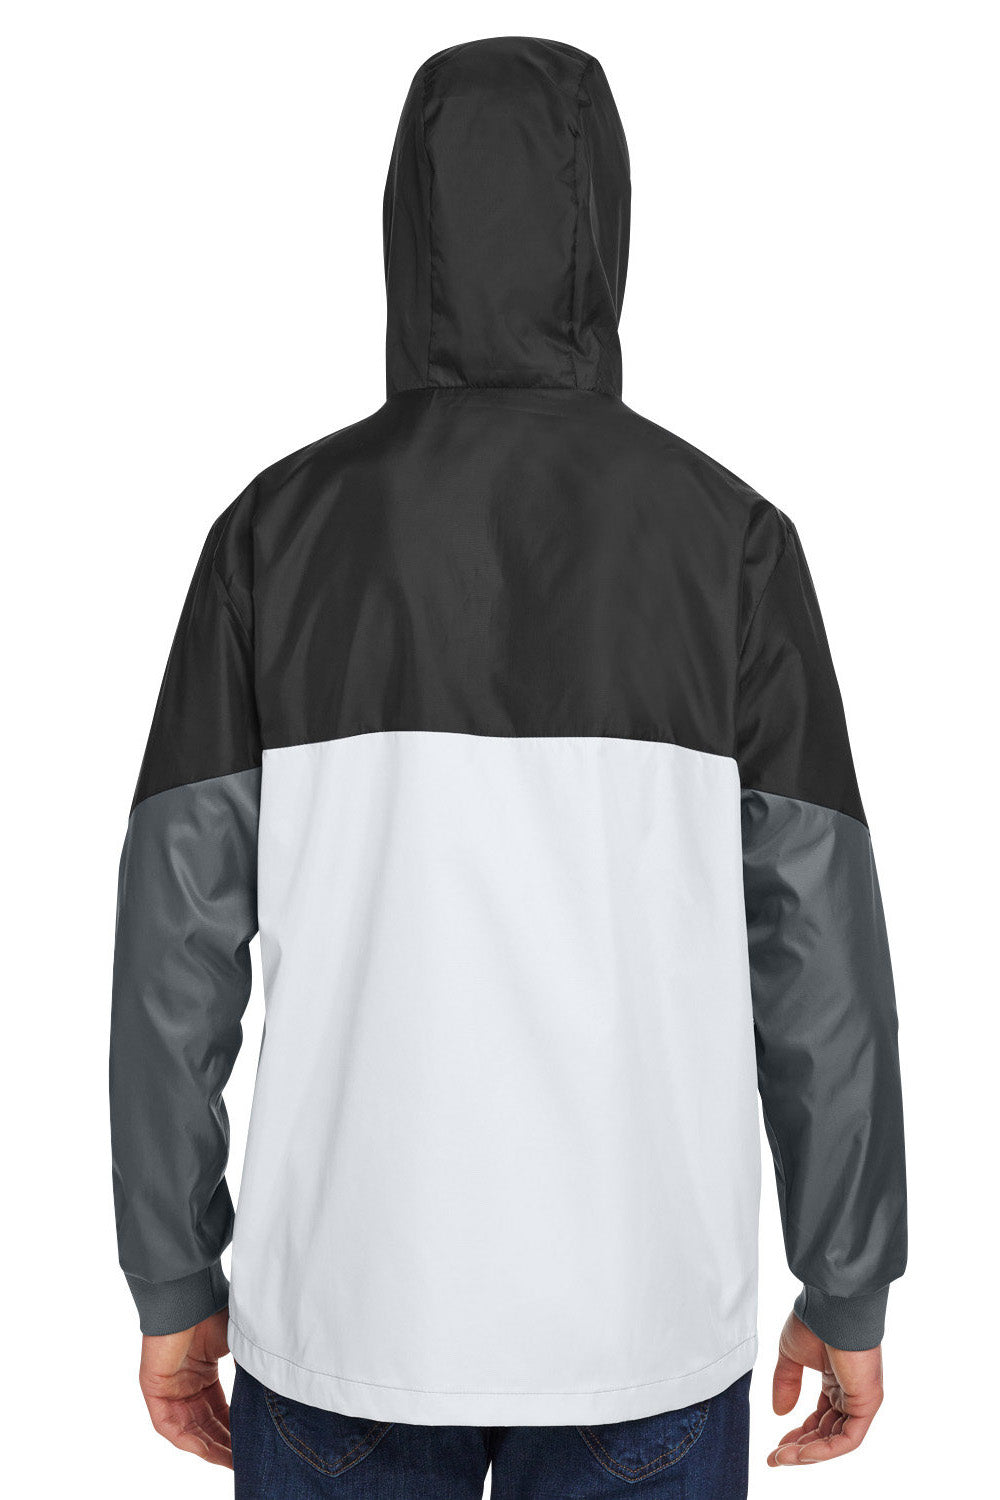 Under Armour 1359386 Mens Team Legacy Wind & Water Resistant Full Zip Hooded Jacket Black Model Back